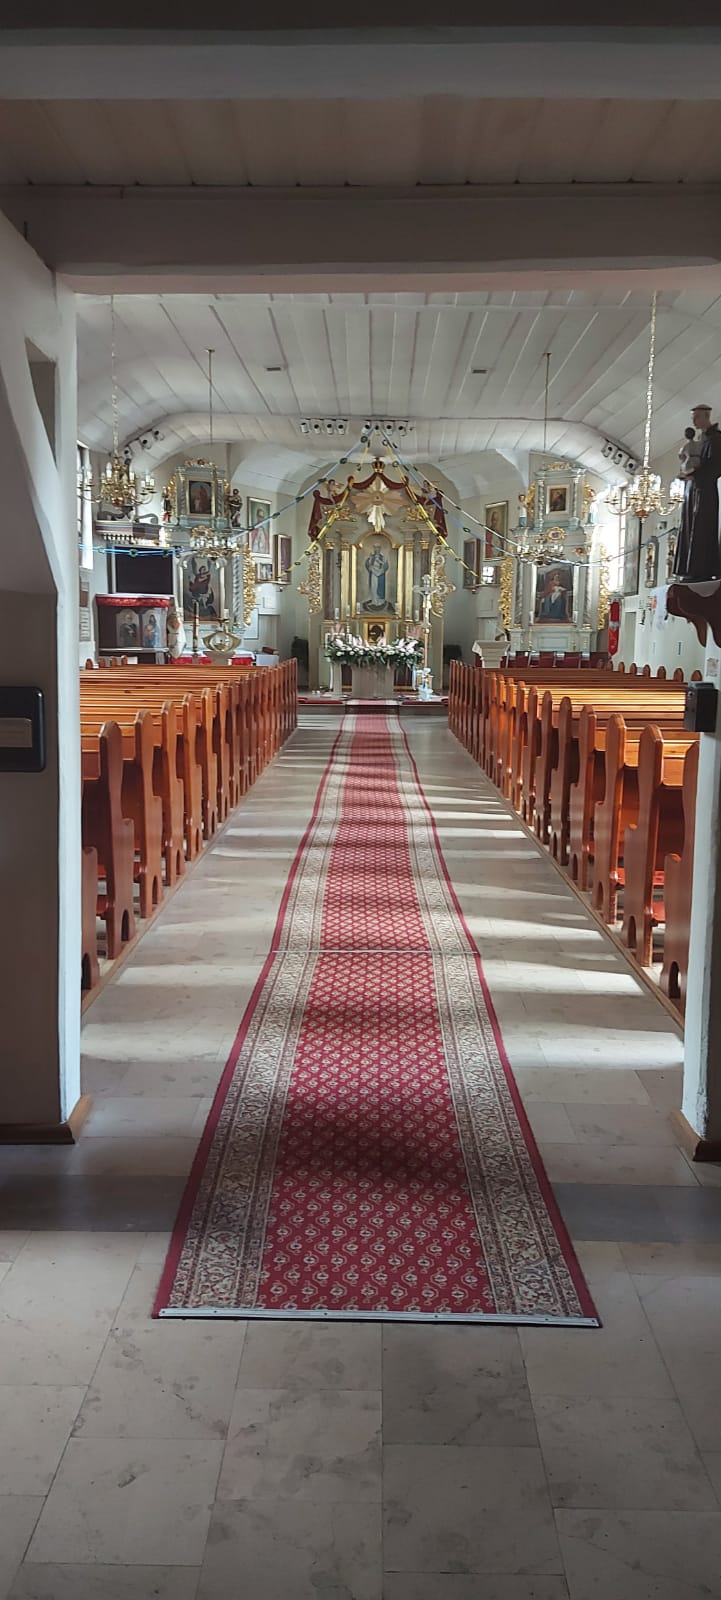 Drewniane ławki po obu stronach, a na środku pozłacany ołtarz kościoła obok niego święte obrazy.